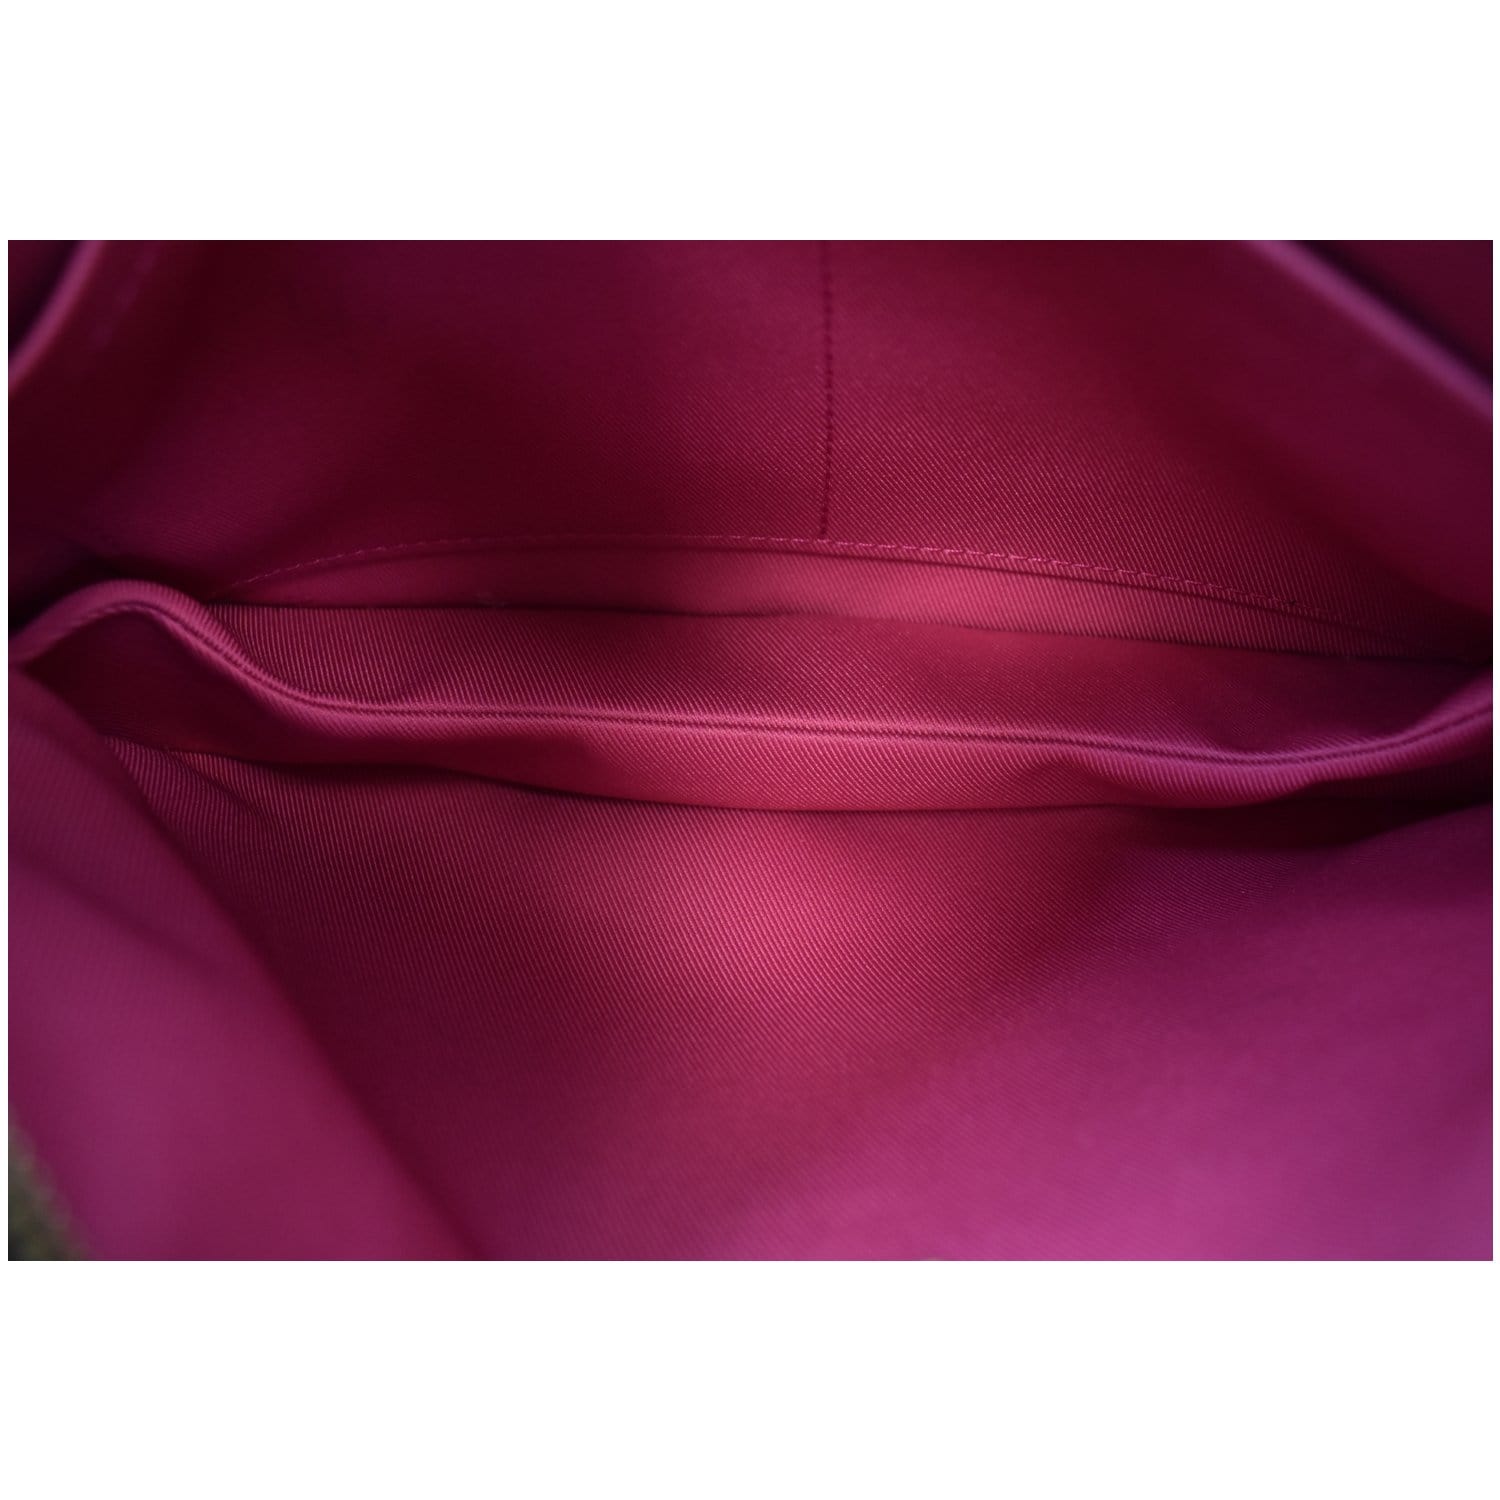 Louis Vuitton Lorette Monogram Canvas Shoulder Bag